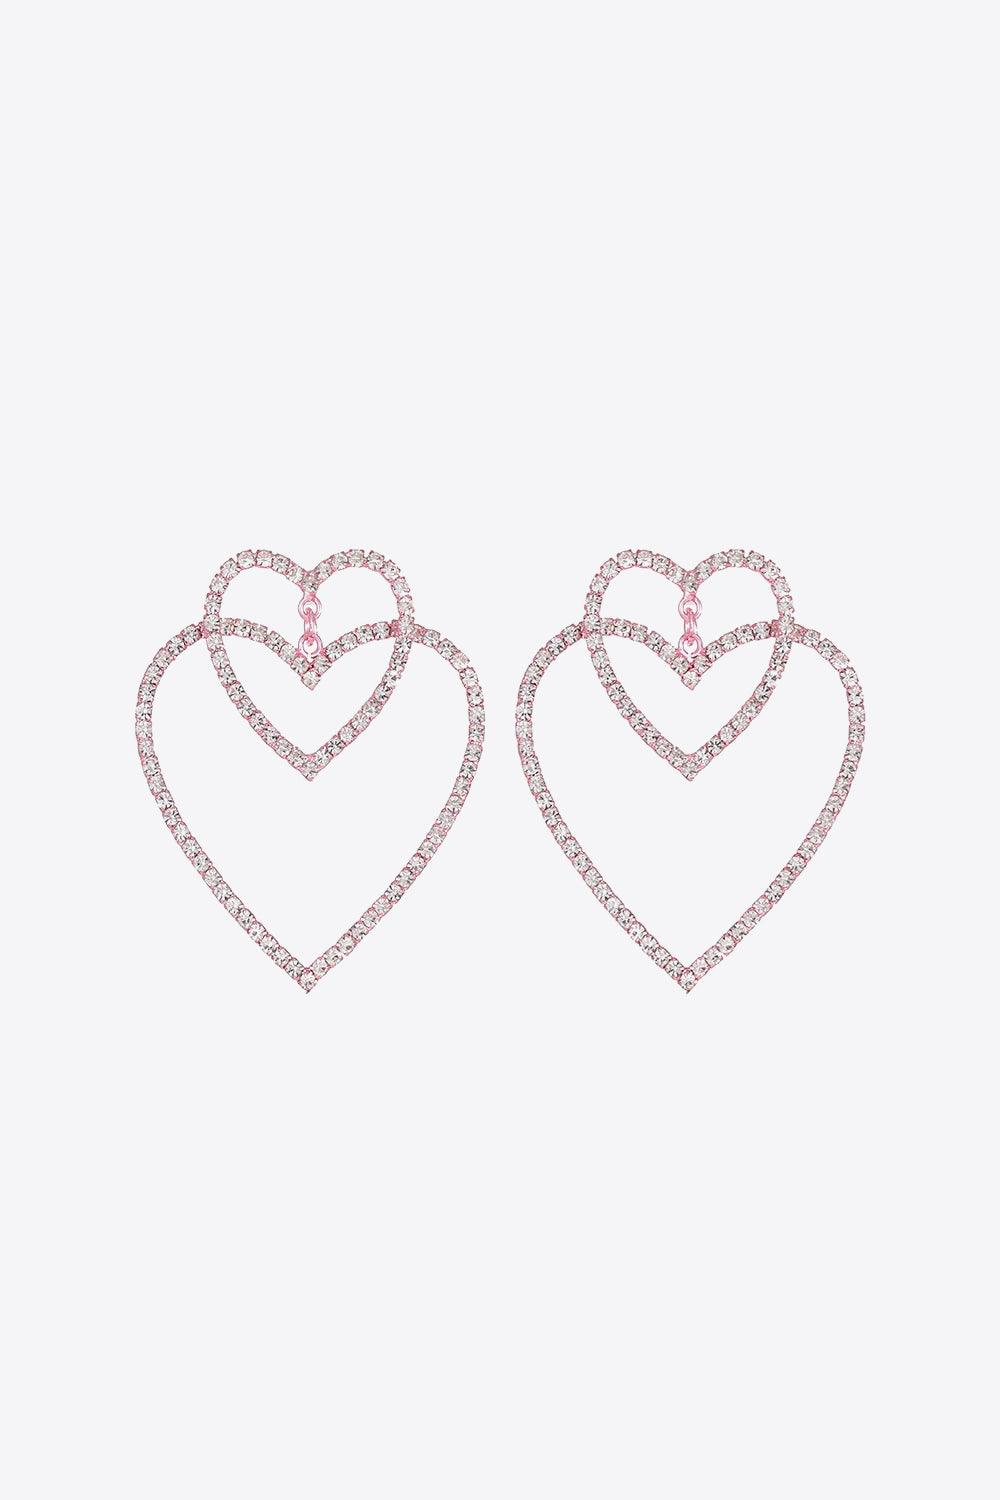 Women's Jewelry - Earrings Glass Stone Decor Heart Copper Earrings